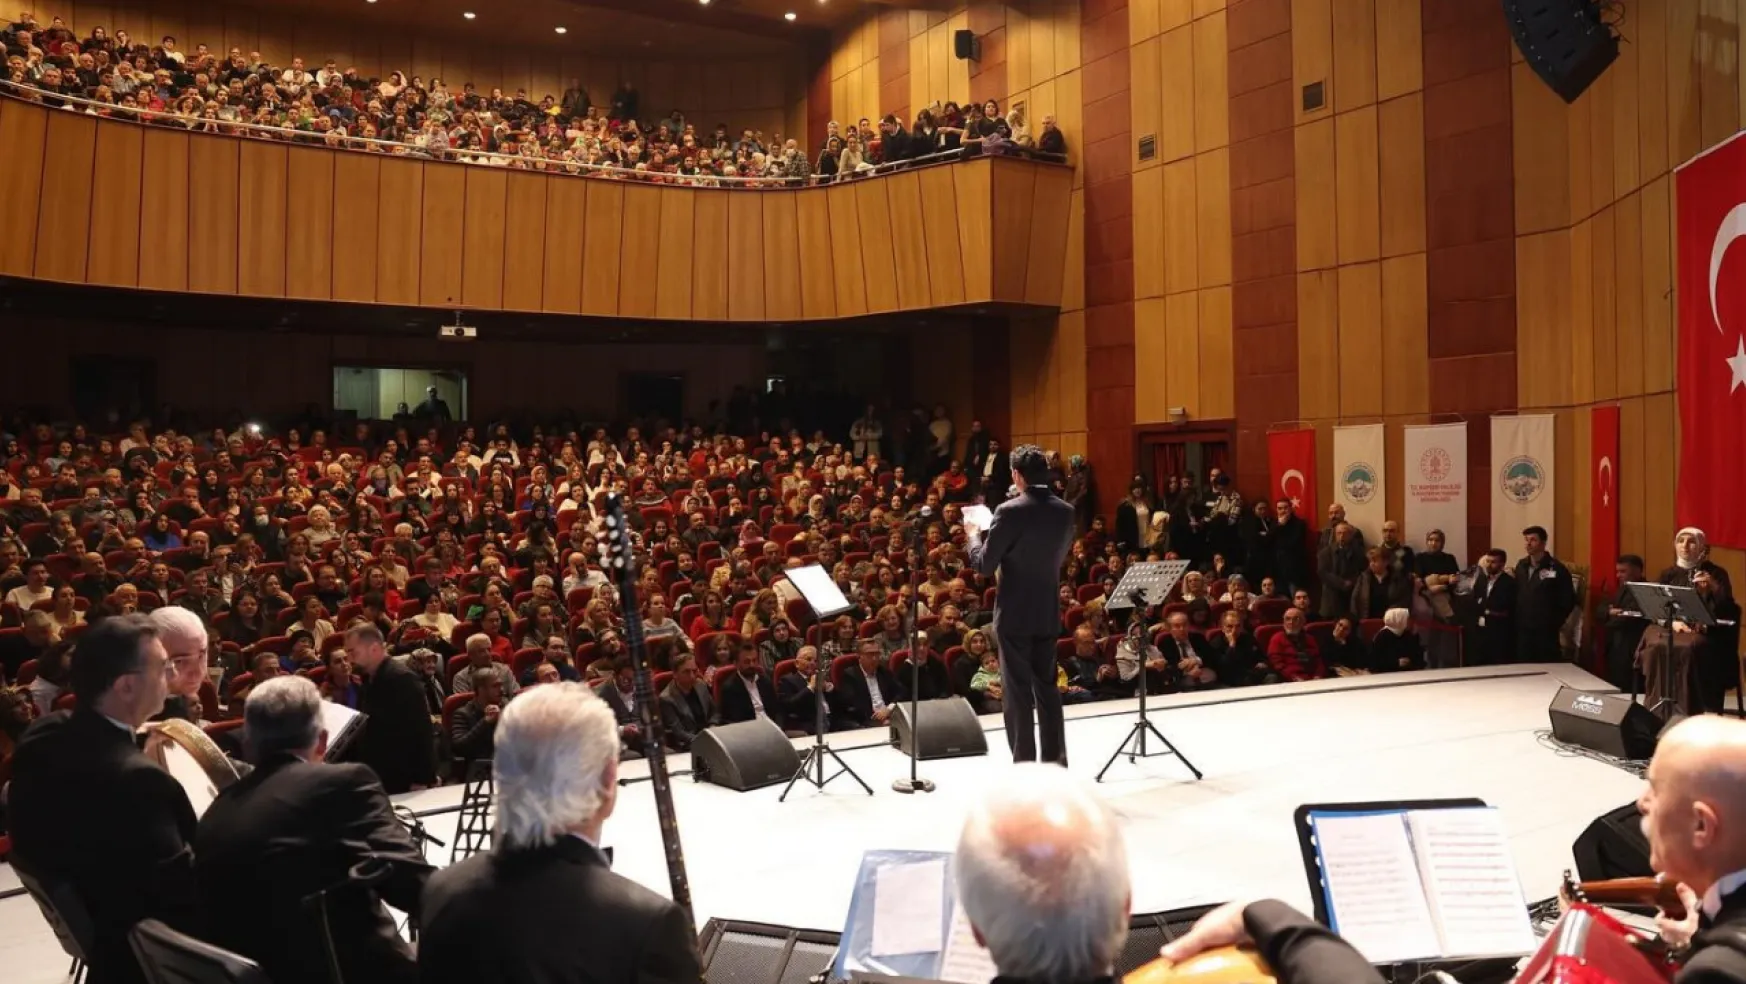 Vatandaşlar, Türk Sanat Müziği Konseri'nde buluştu